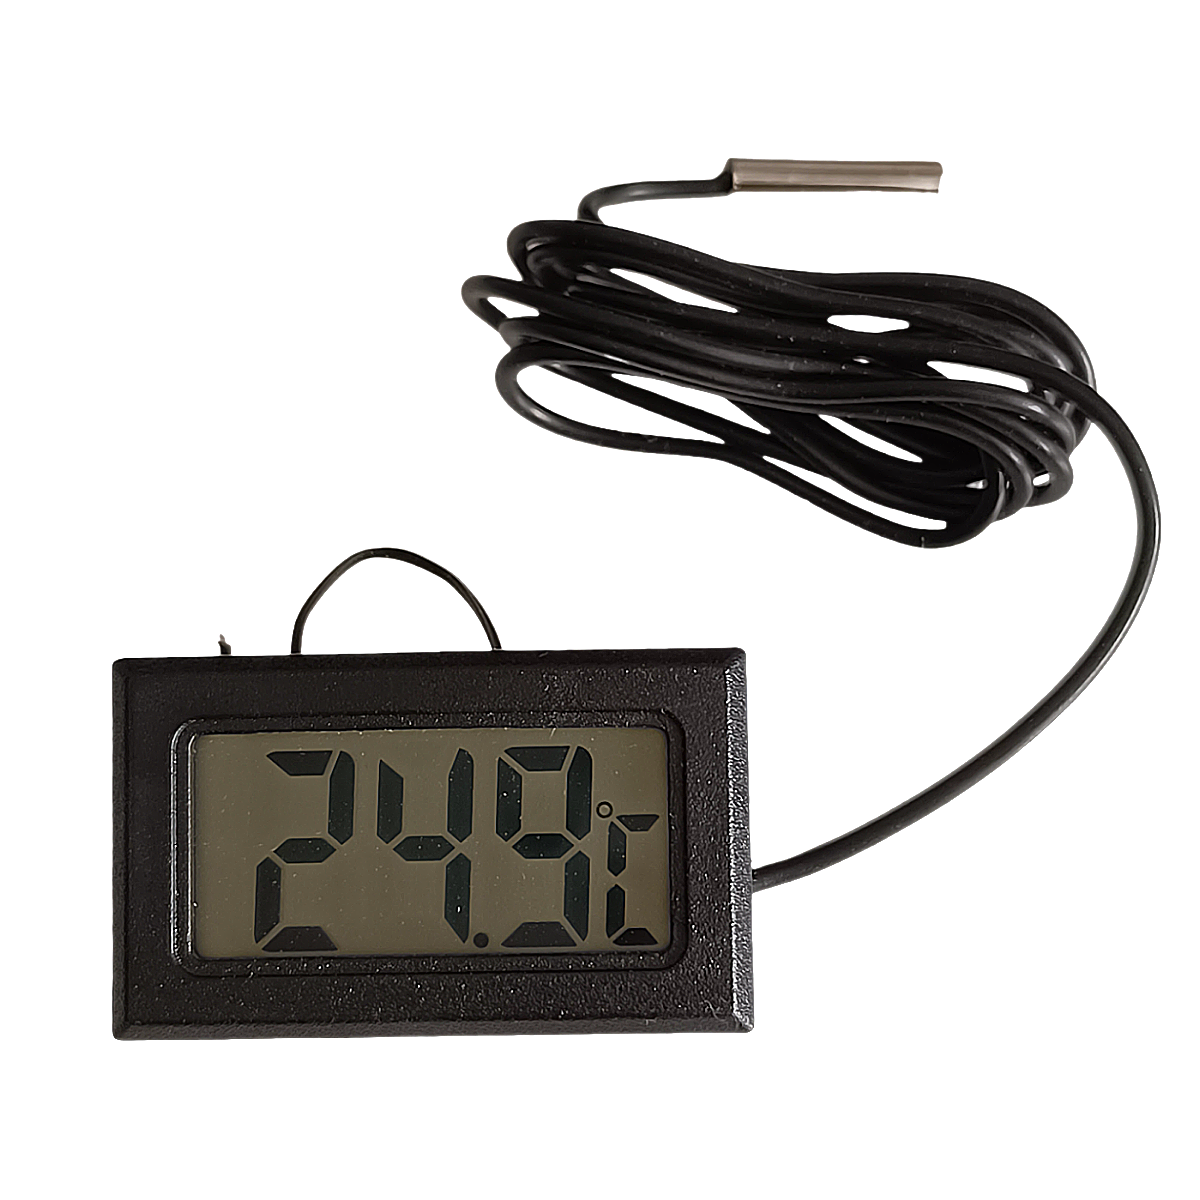 Цифровой термометр с выносным датчиком 1м черный